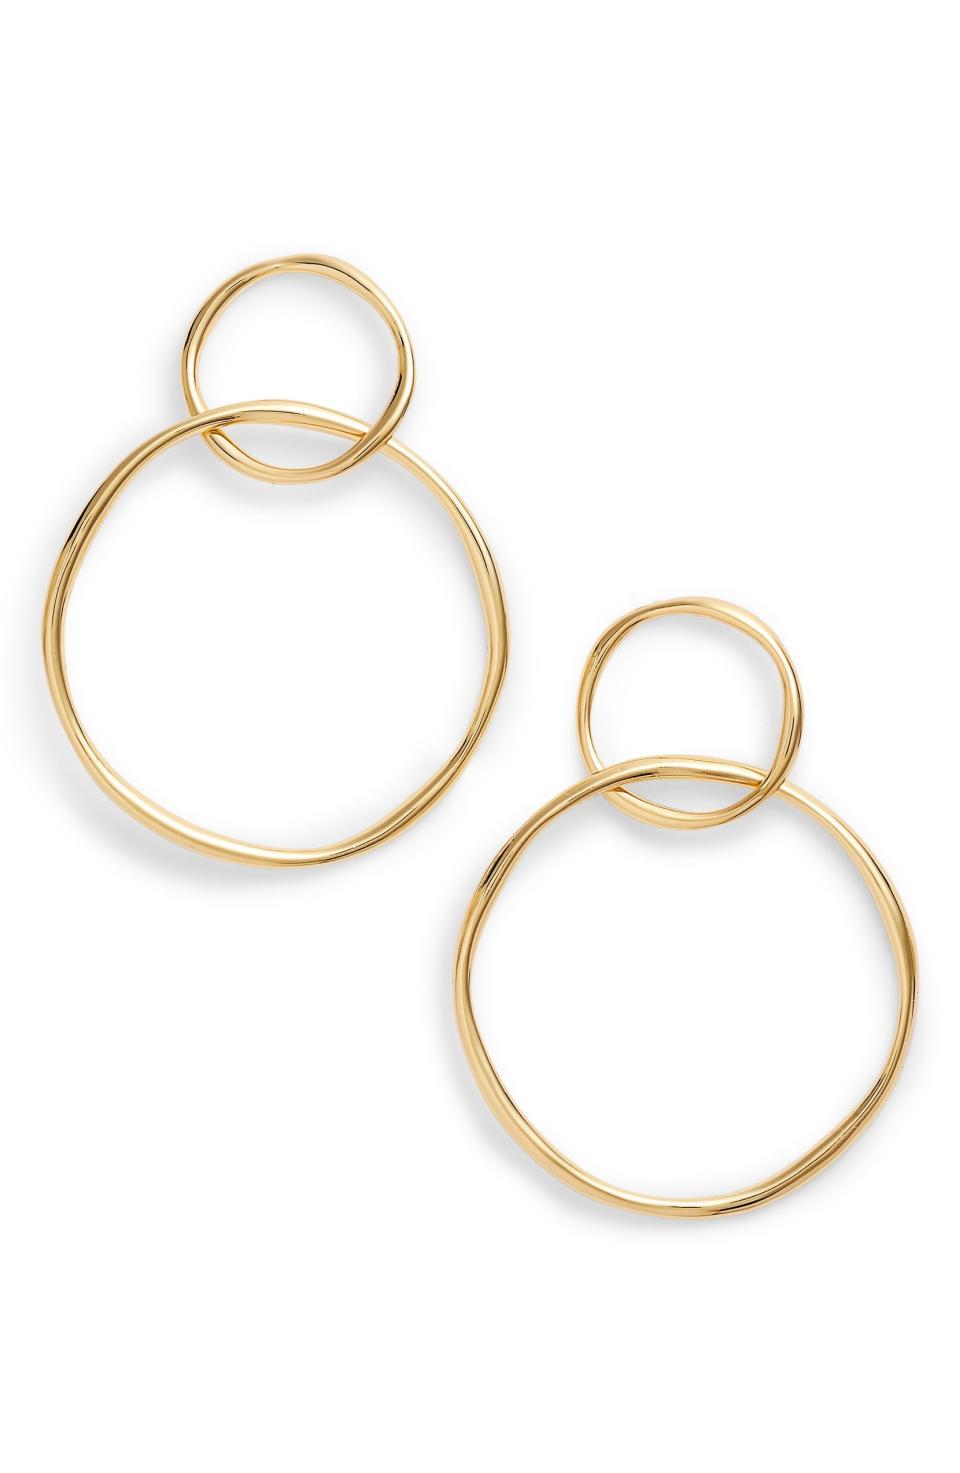 Gorjana Kellen Linked Drop Earrings, $60 $39.90, Nordstrom